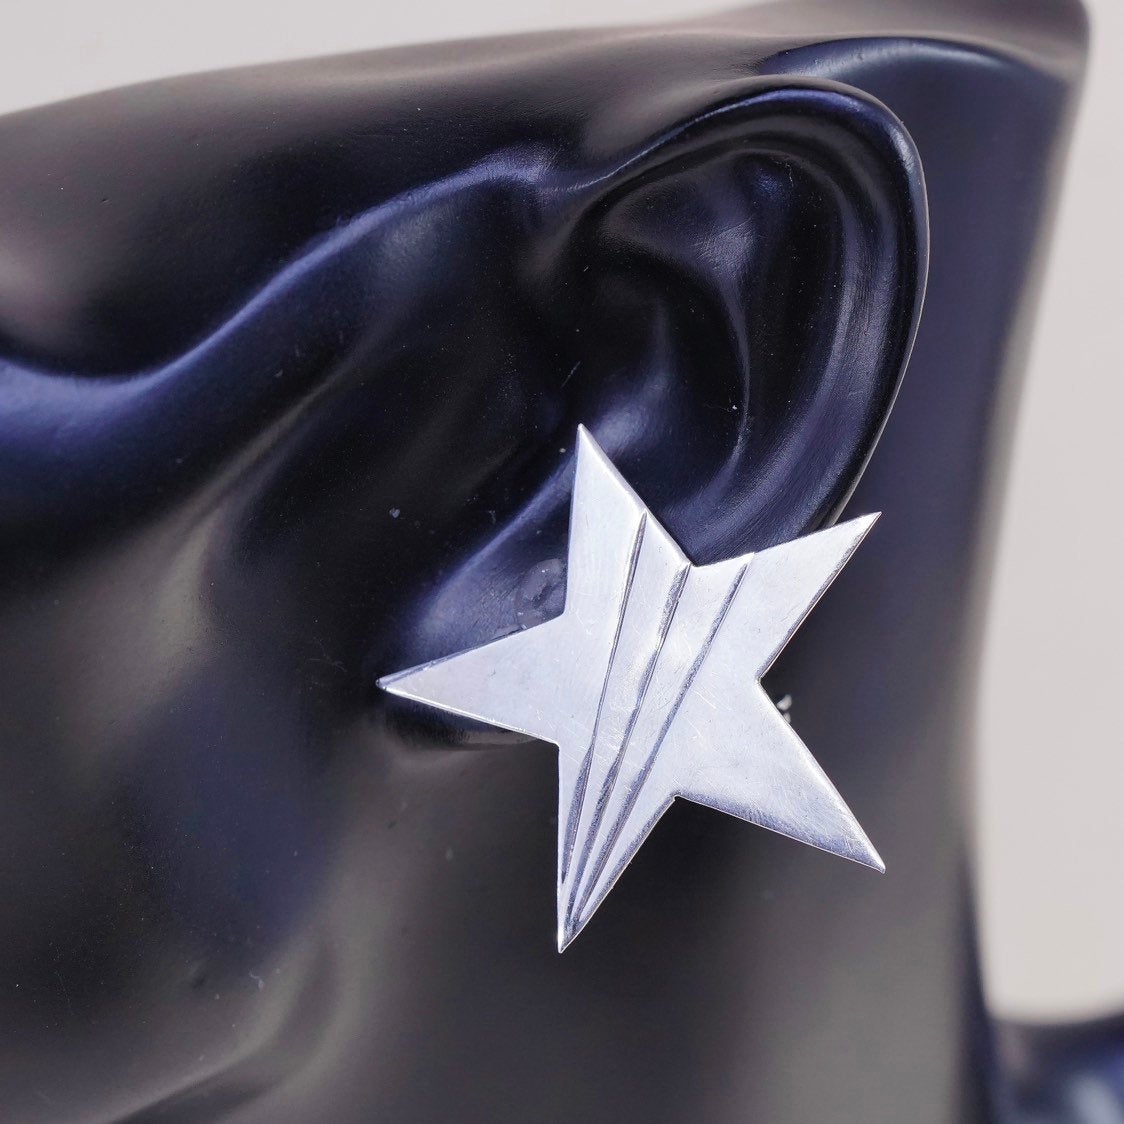 VTG RM sterling silver handmade earrings, 925 clip on earrings star